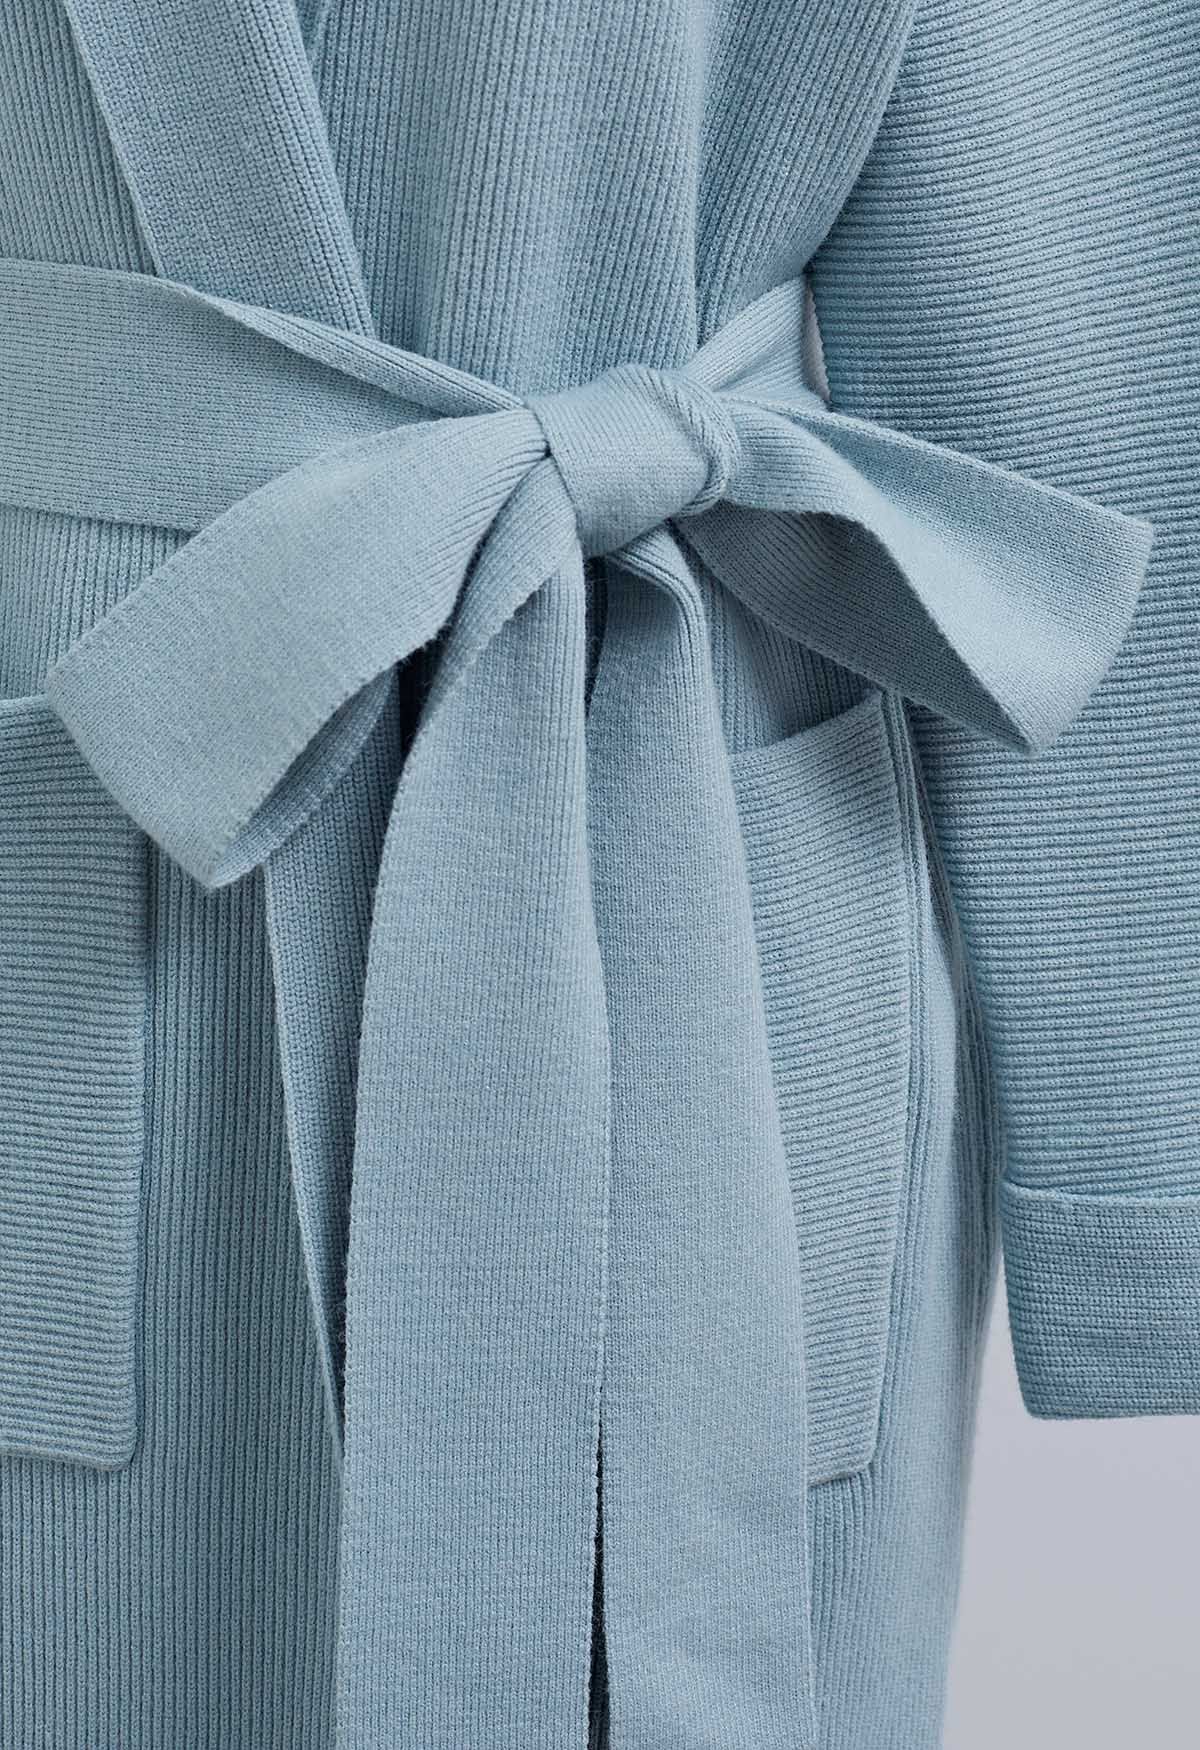 سترة صوفية طويلة متماسكة بحزام وطية صدر السترة باللون الأزرق